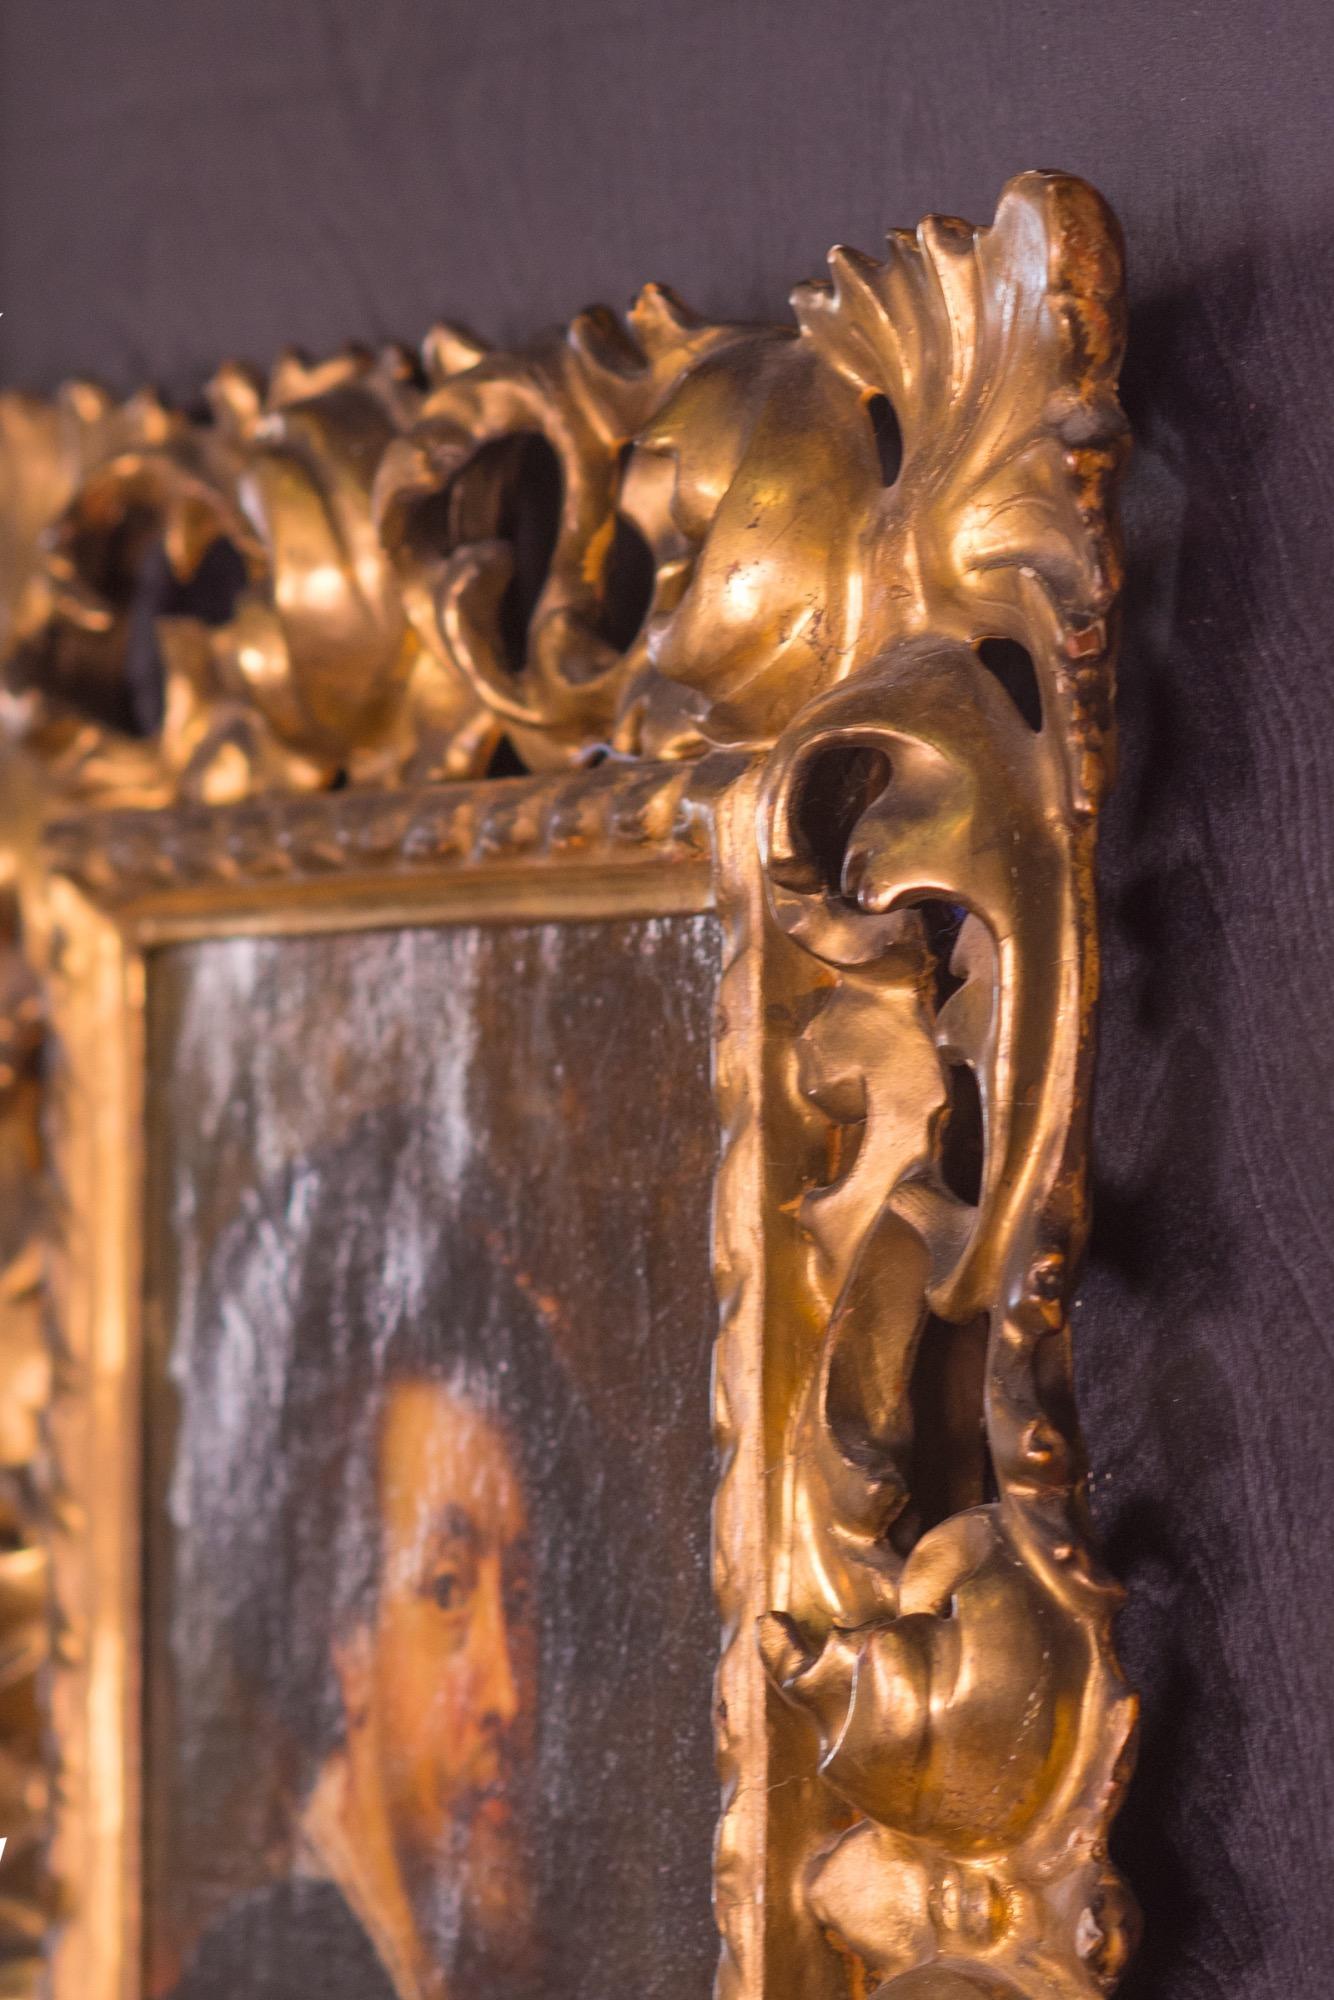 Polychromé Portrait autoportrait de Peter Paul Rubens, 18ème siècle, hollandais, huile sur toile